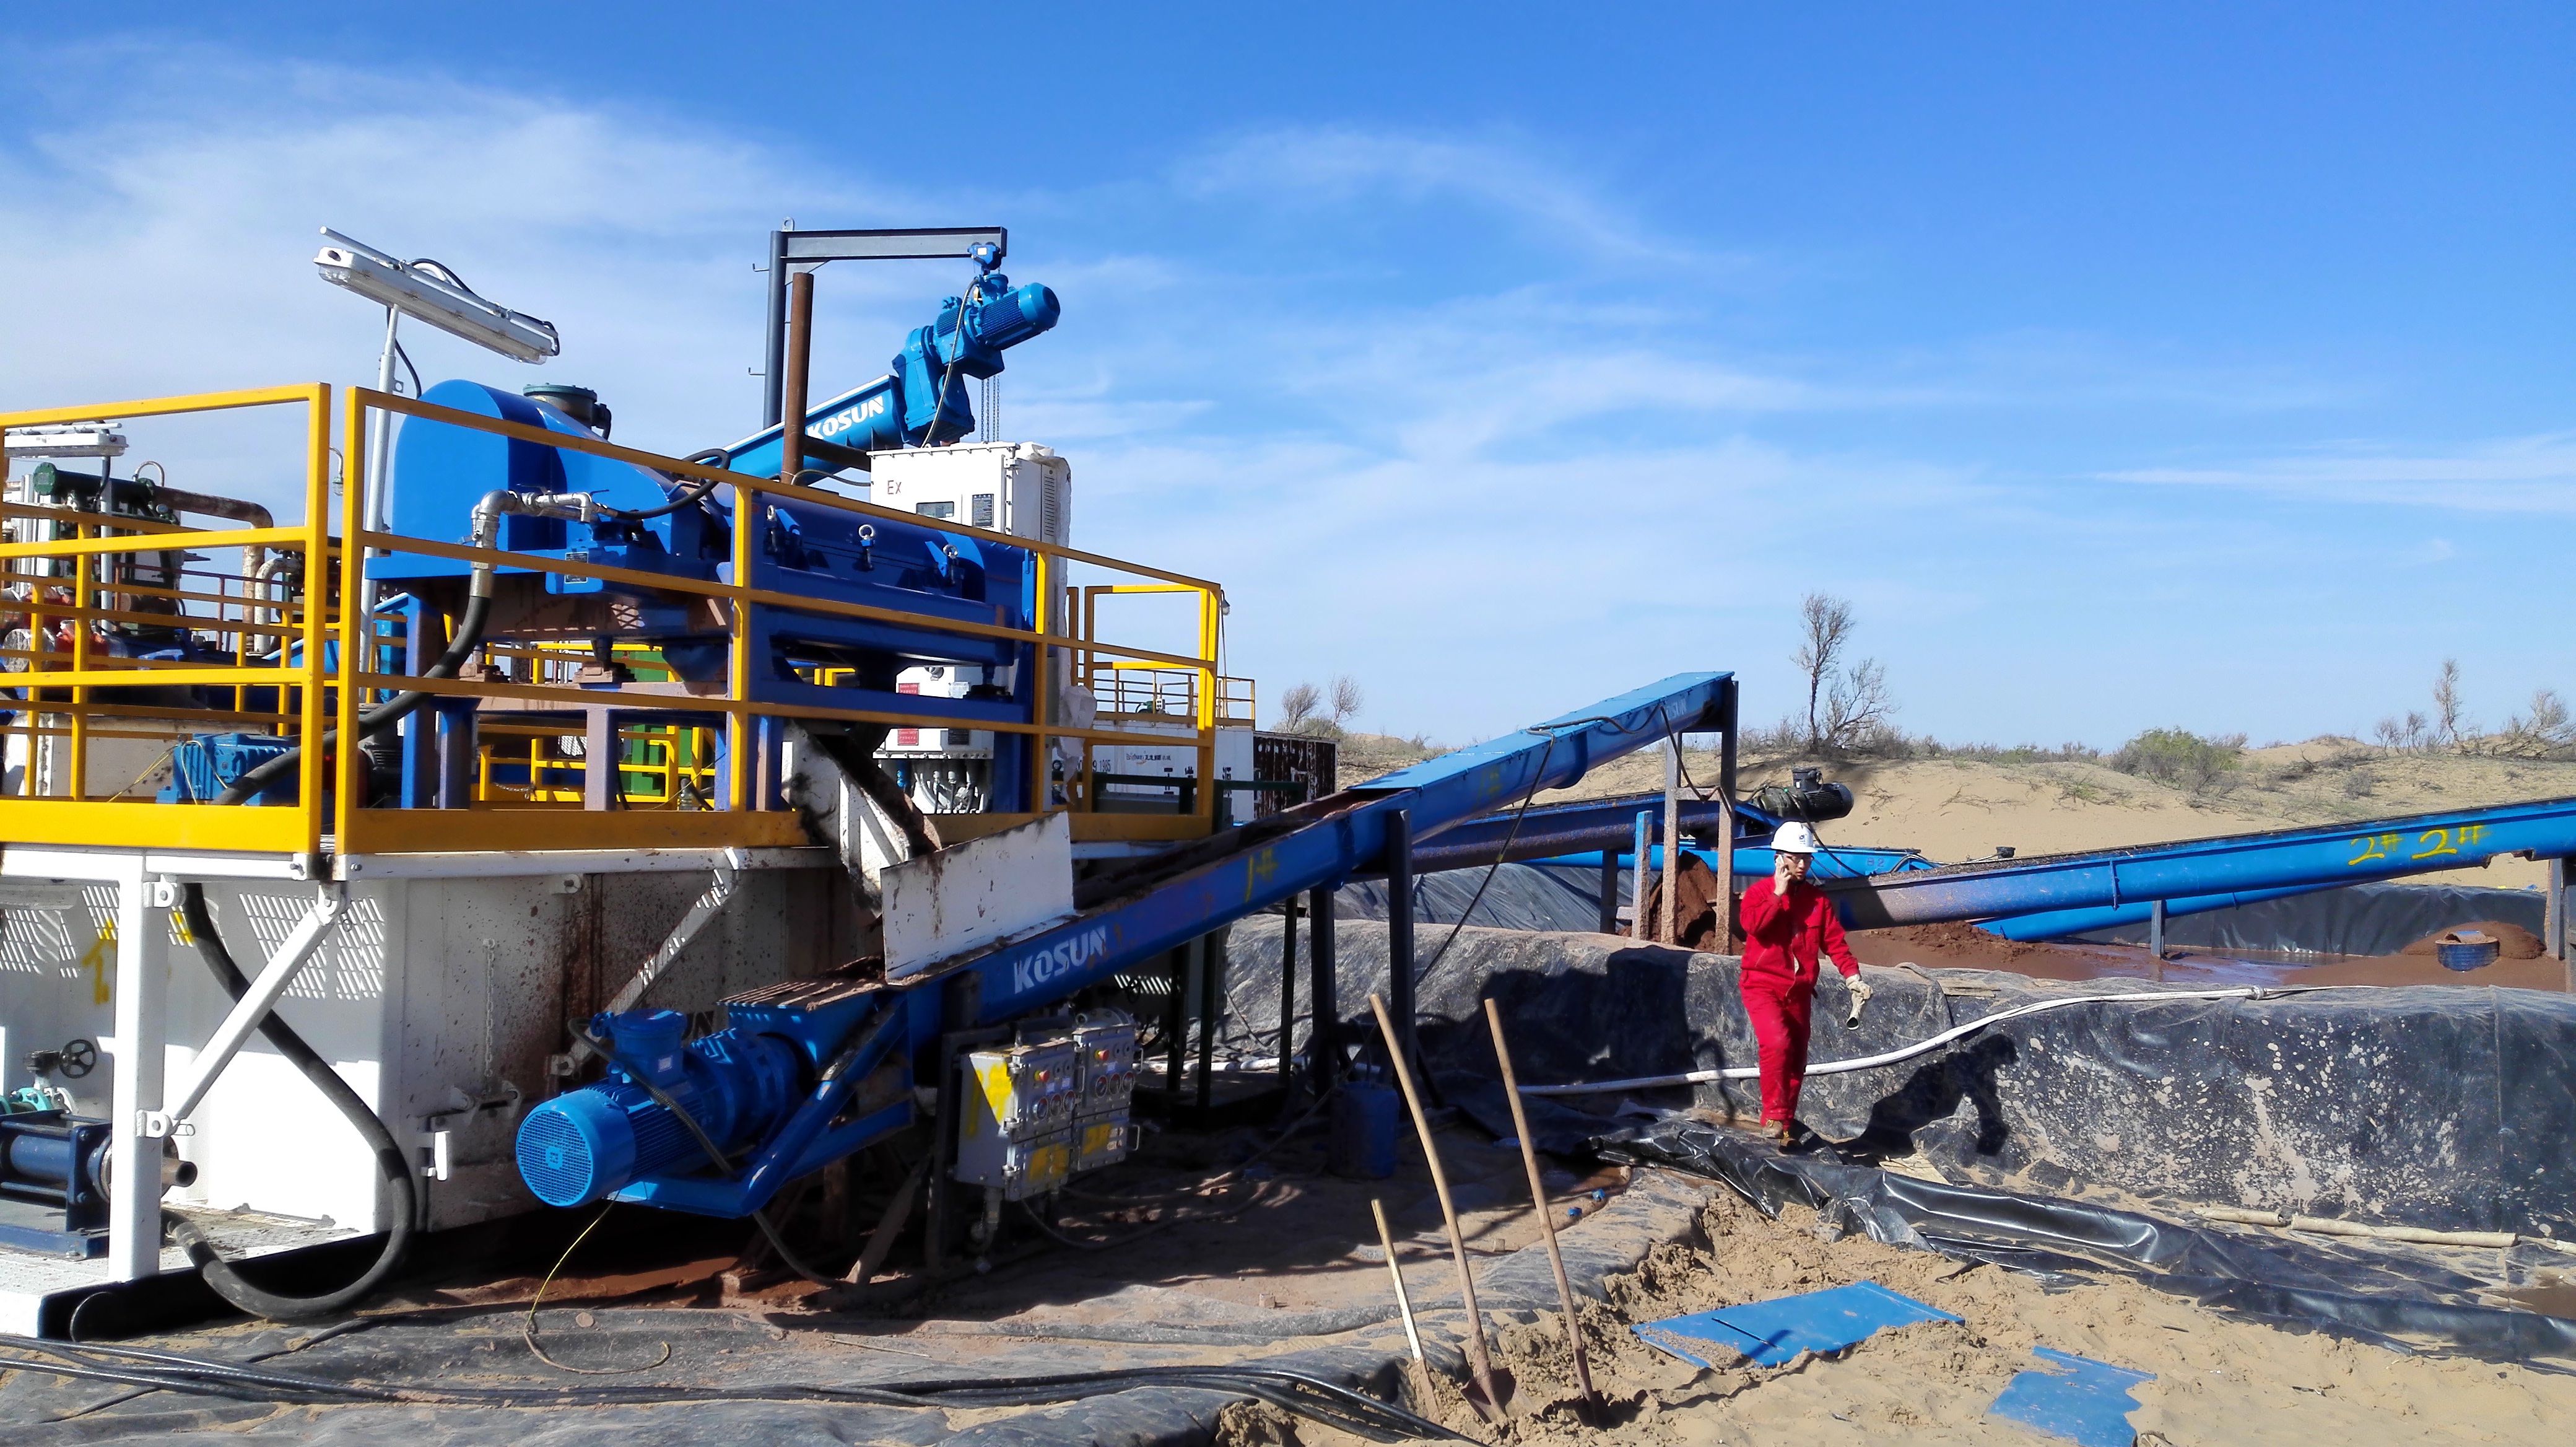  水基钻井液泥浆不落地系统能够有效地降低废弃泥浆的处理成本